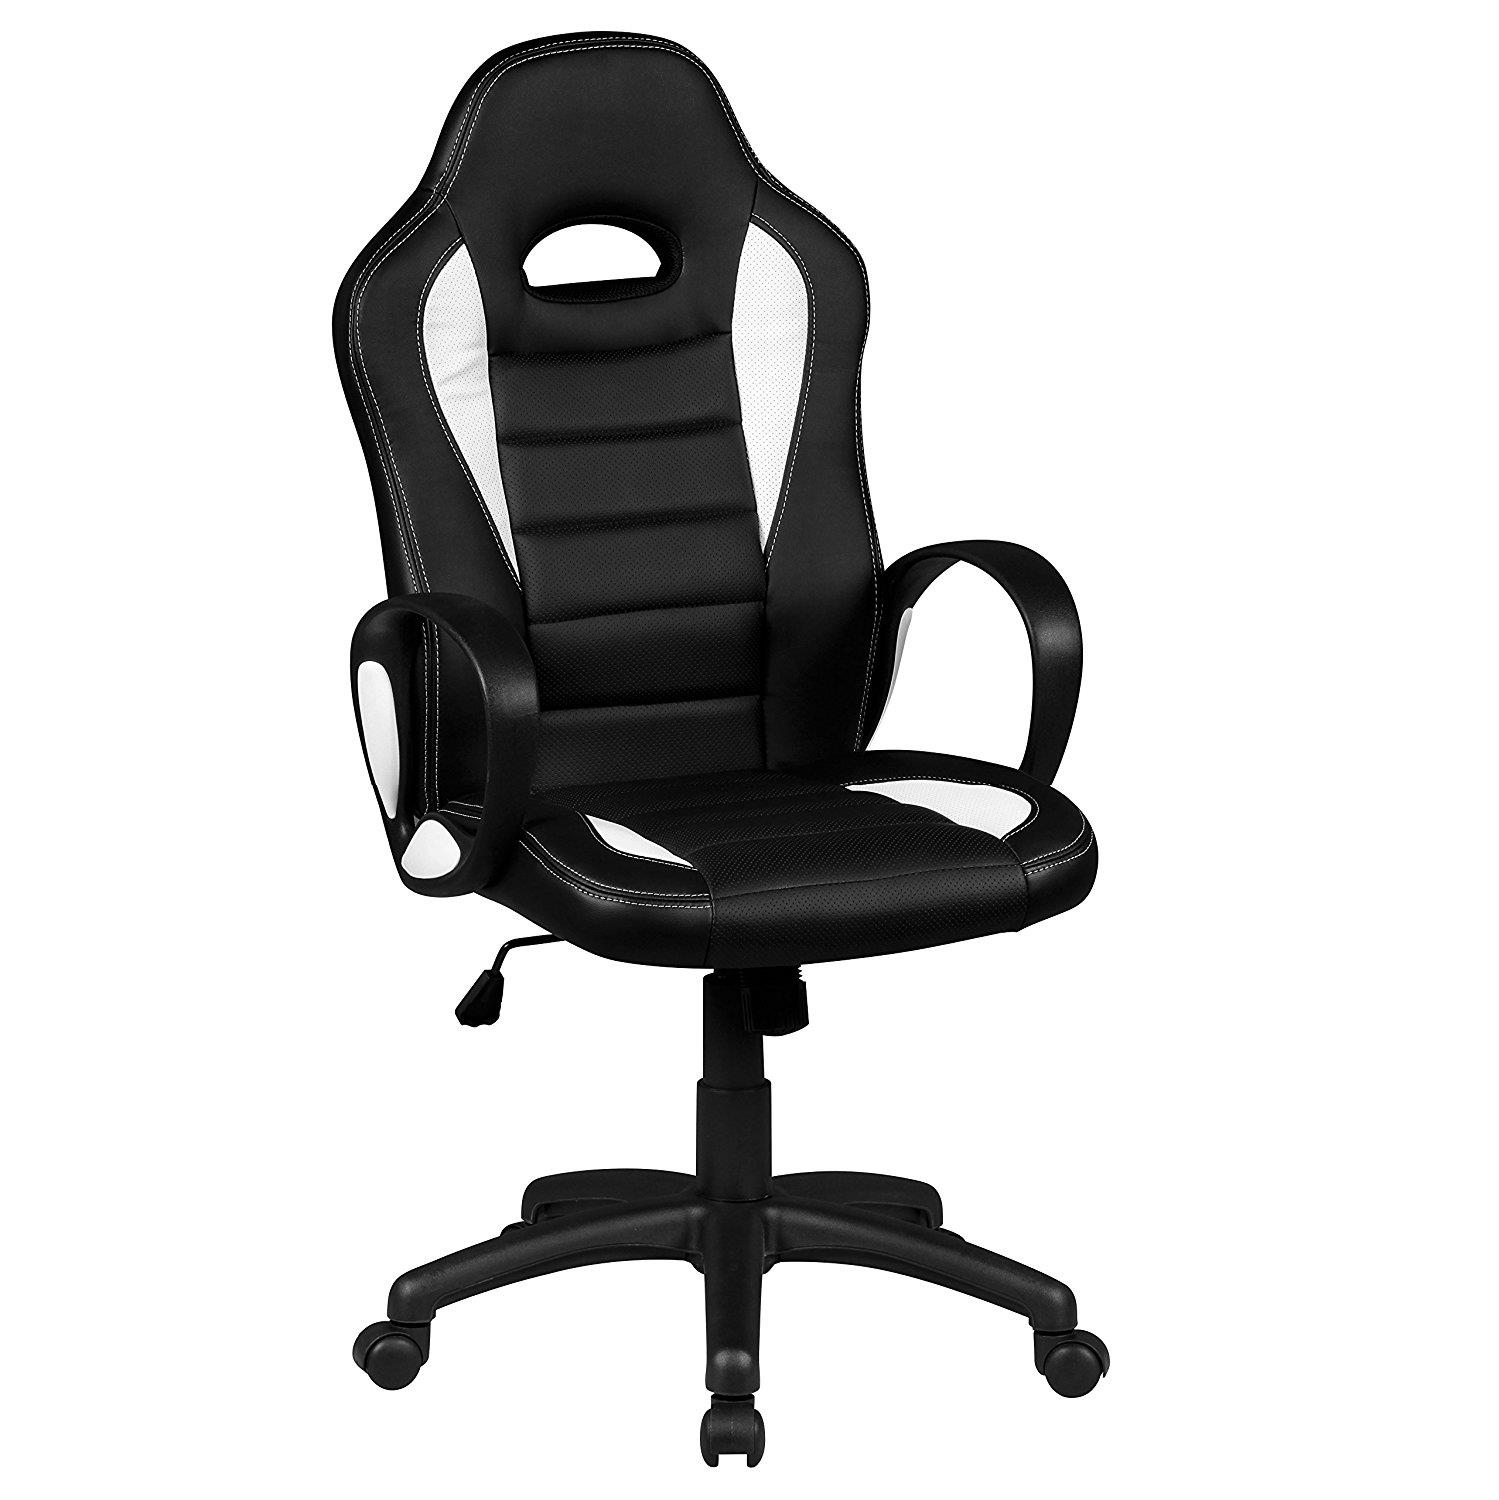 Gaming-Stuhl SEAN, sportliches Design, sehr bequem, Lederbezug, Farbe Schwarz / Weiß